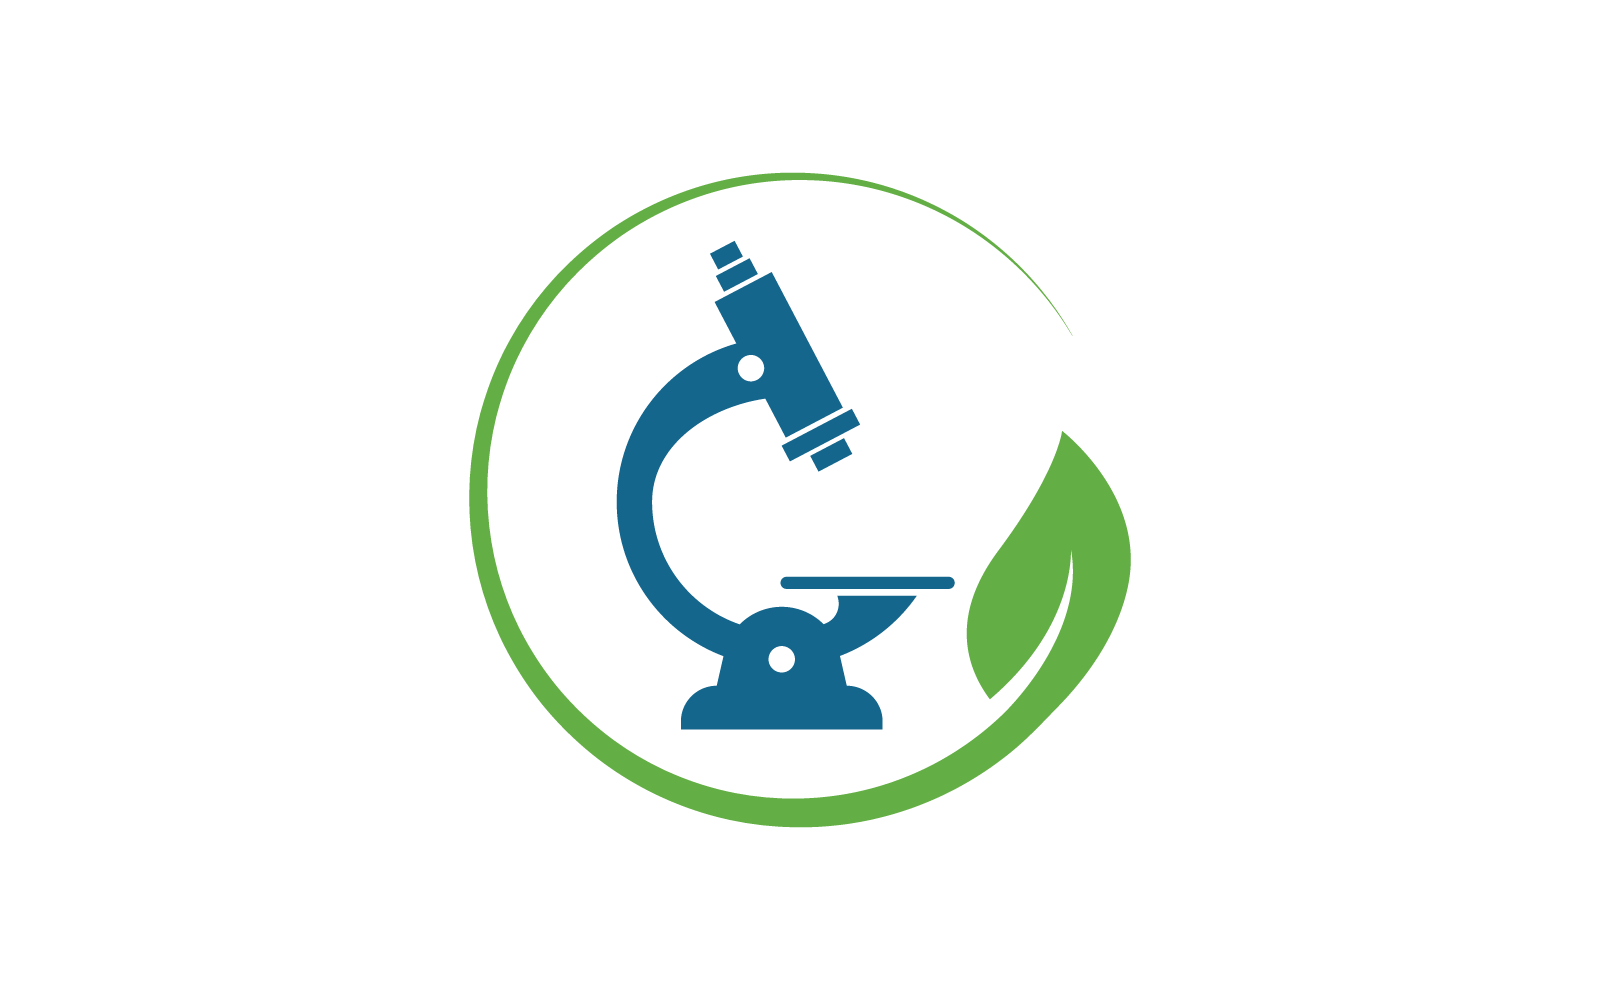 Microscope logo icon vector illustration design template